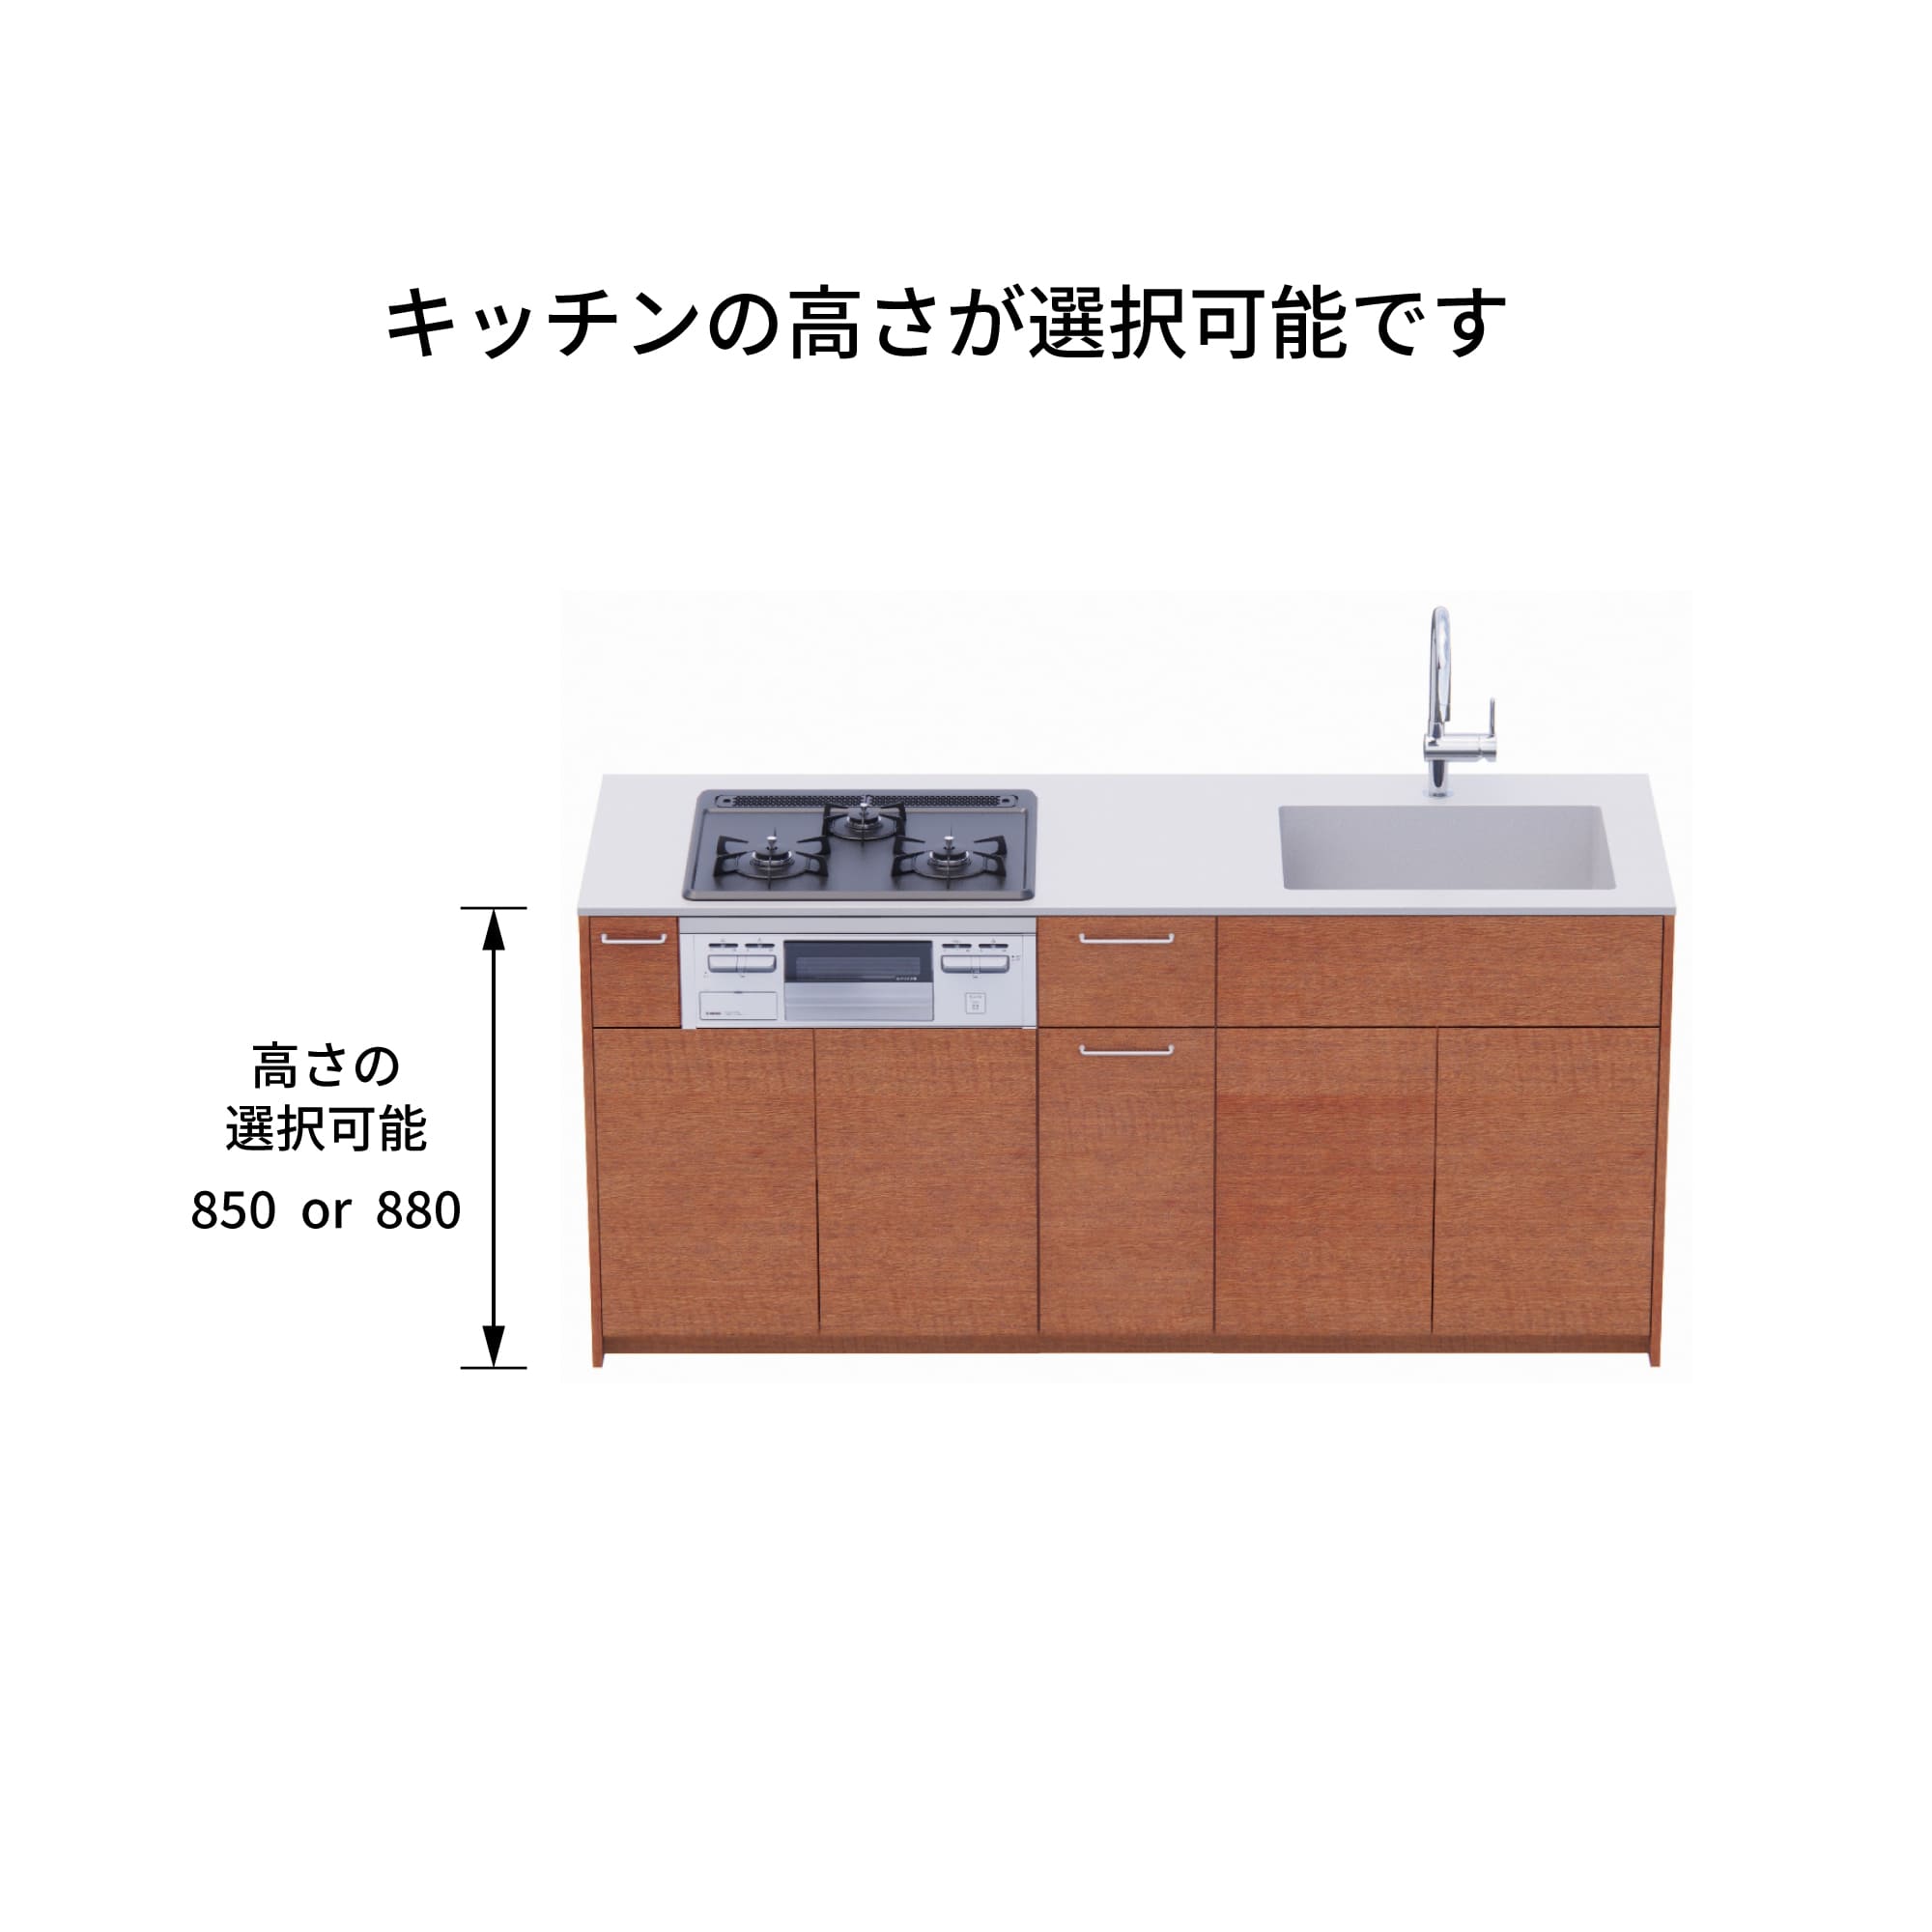 木製システムキッチン 壁付け型 W1840・コンロあり / オーブンなし / 食洗機なし KB-KC022-11-G183 キッチン高さを選択できます